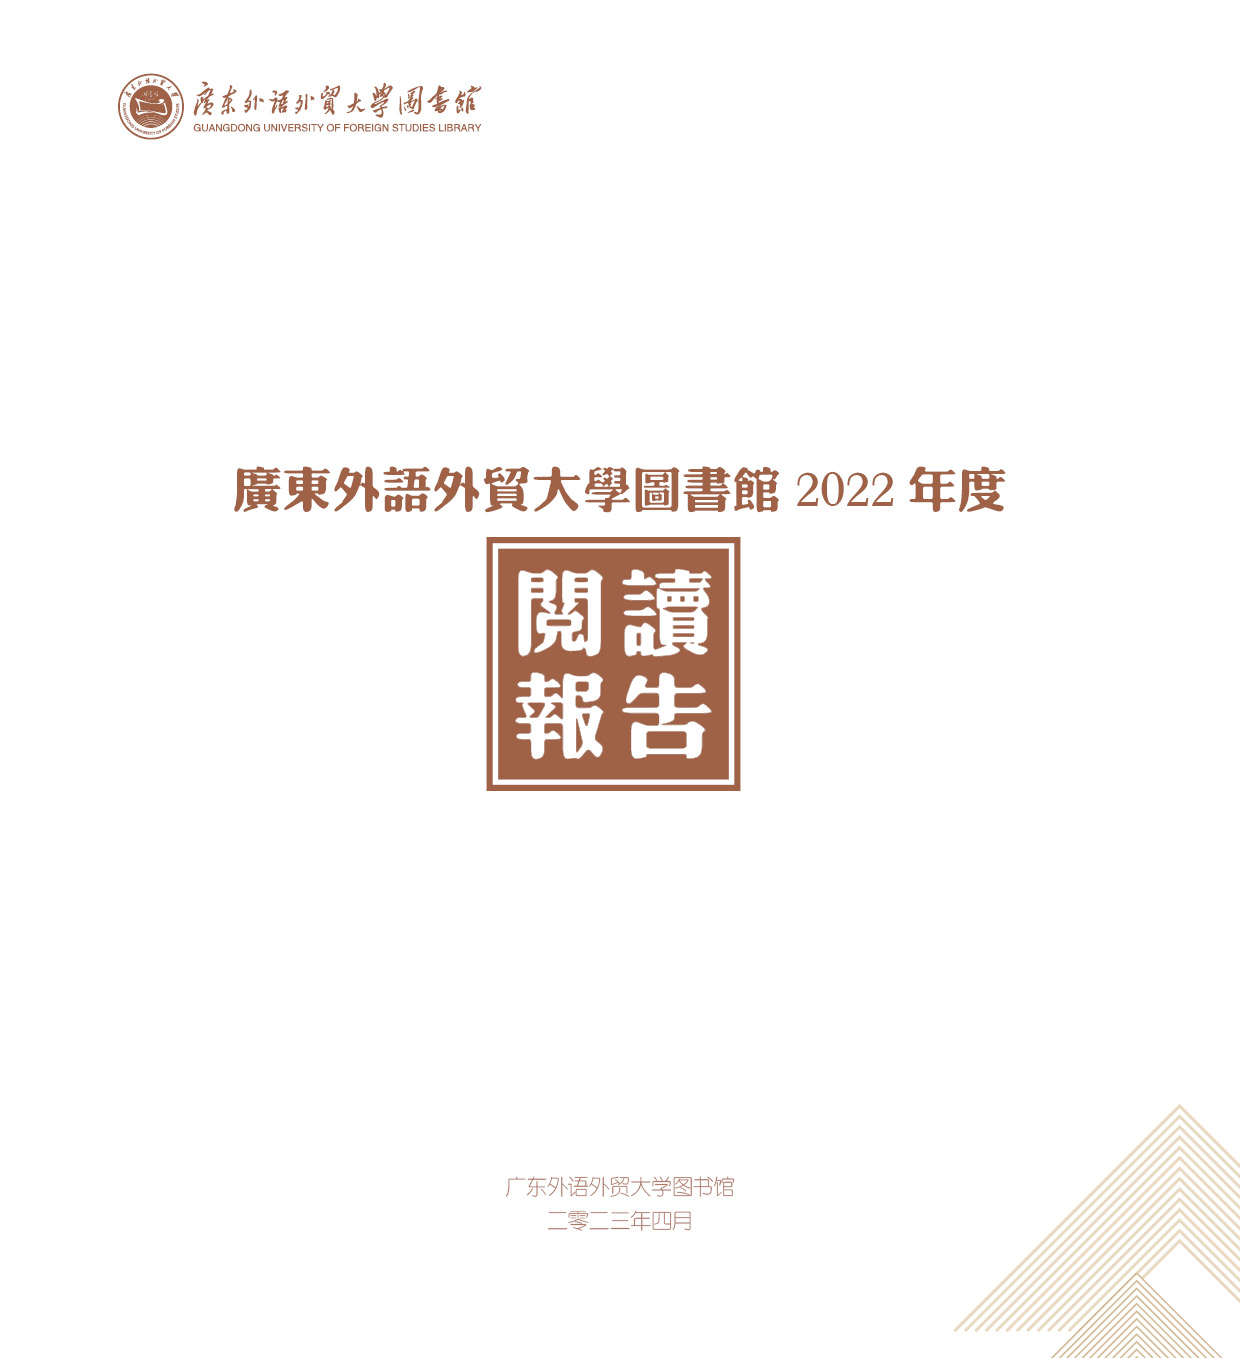 广东外语外贸大学图书馆2022年阅读报告正式发布